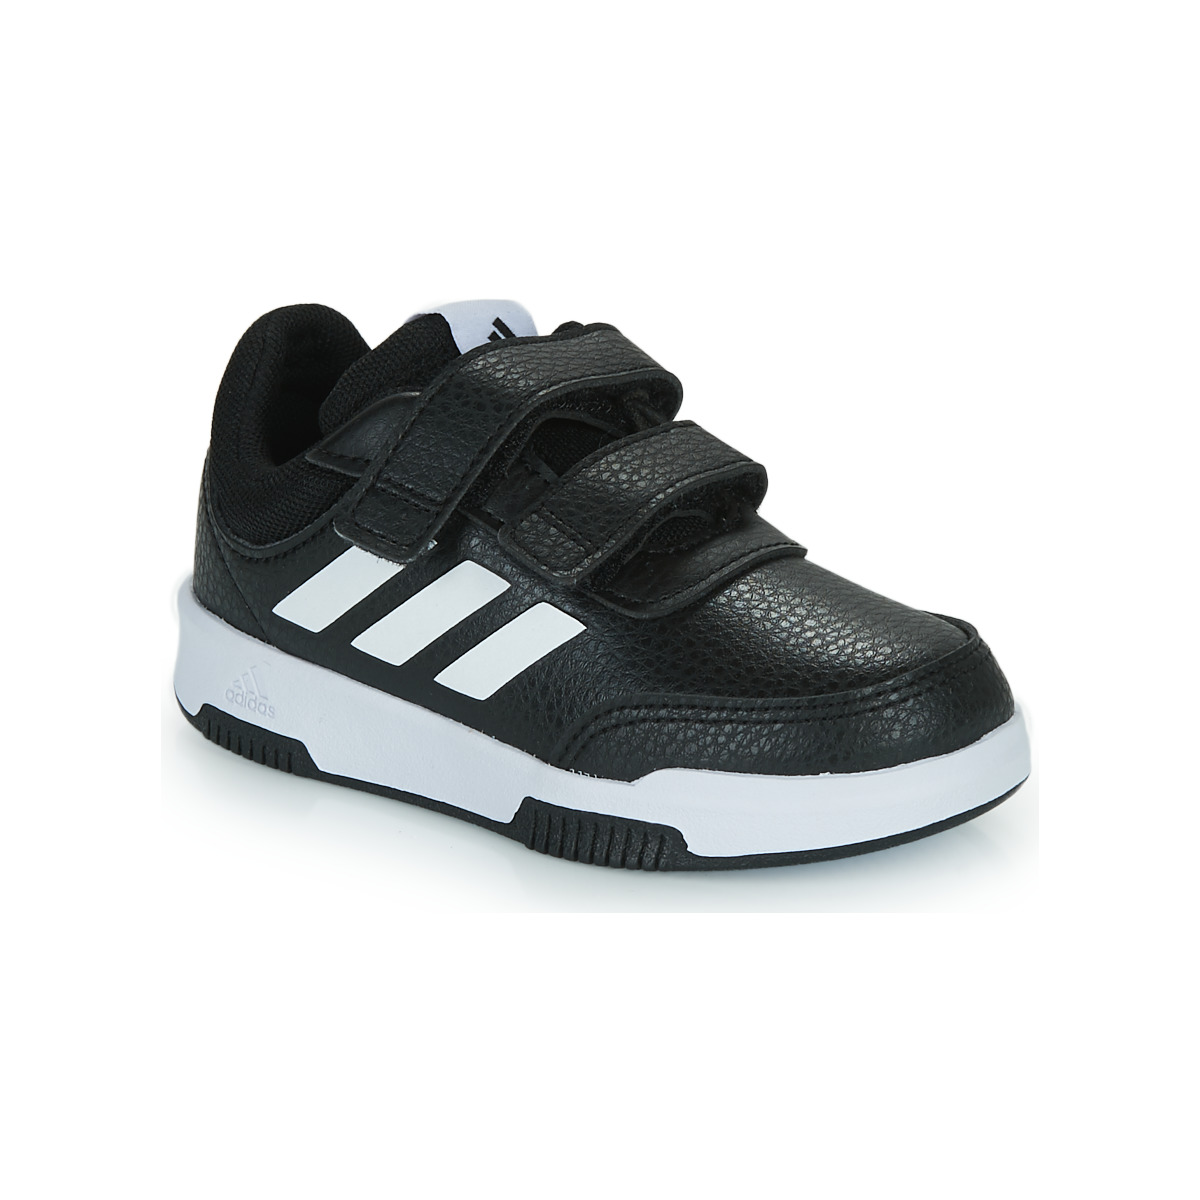 Sko Børn Lave sneakers Adidas Sportswear Tensaur Sport 2.0 C Sort / Hvid